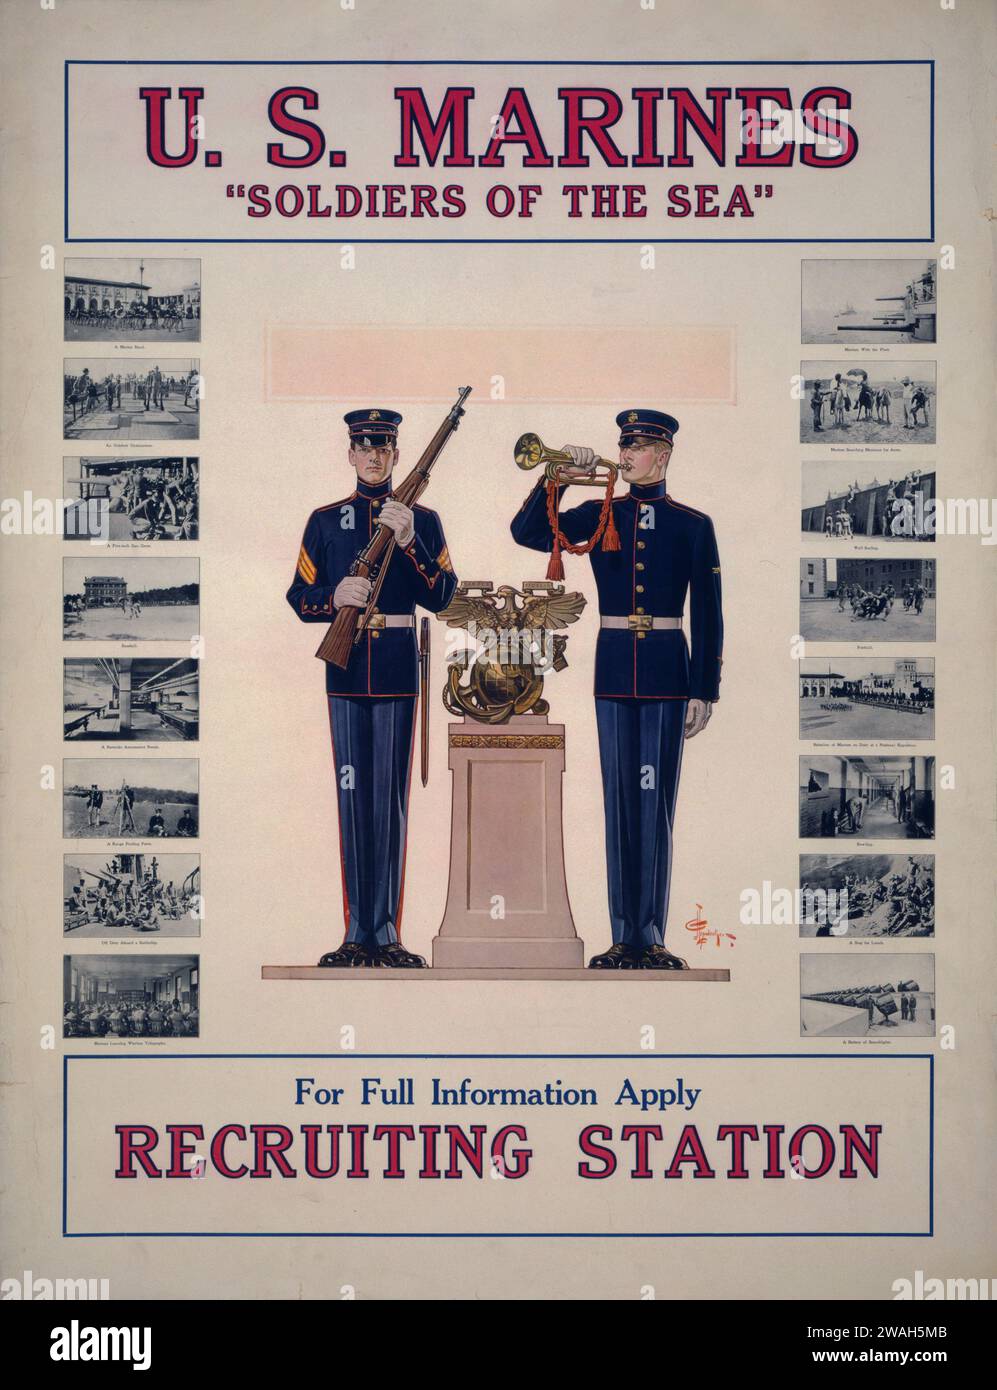 Poster di reclutamento dei Marines americani d'epoca con due soldati in uniforme, uno con un fucile e uno con una tromba, intitolato "Soldiers of the Sea". Foto Stock